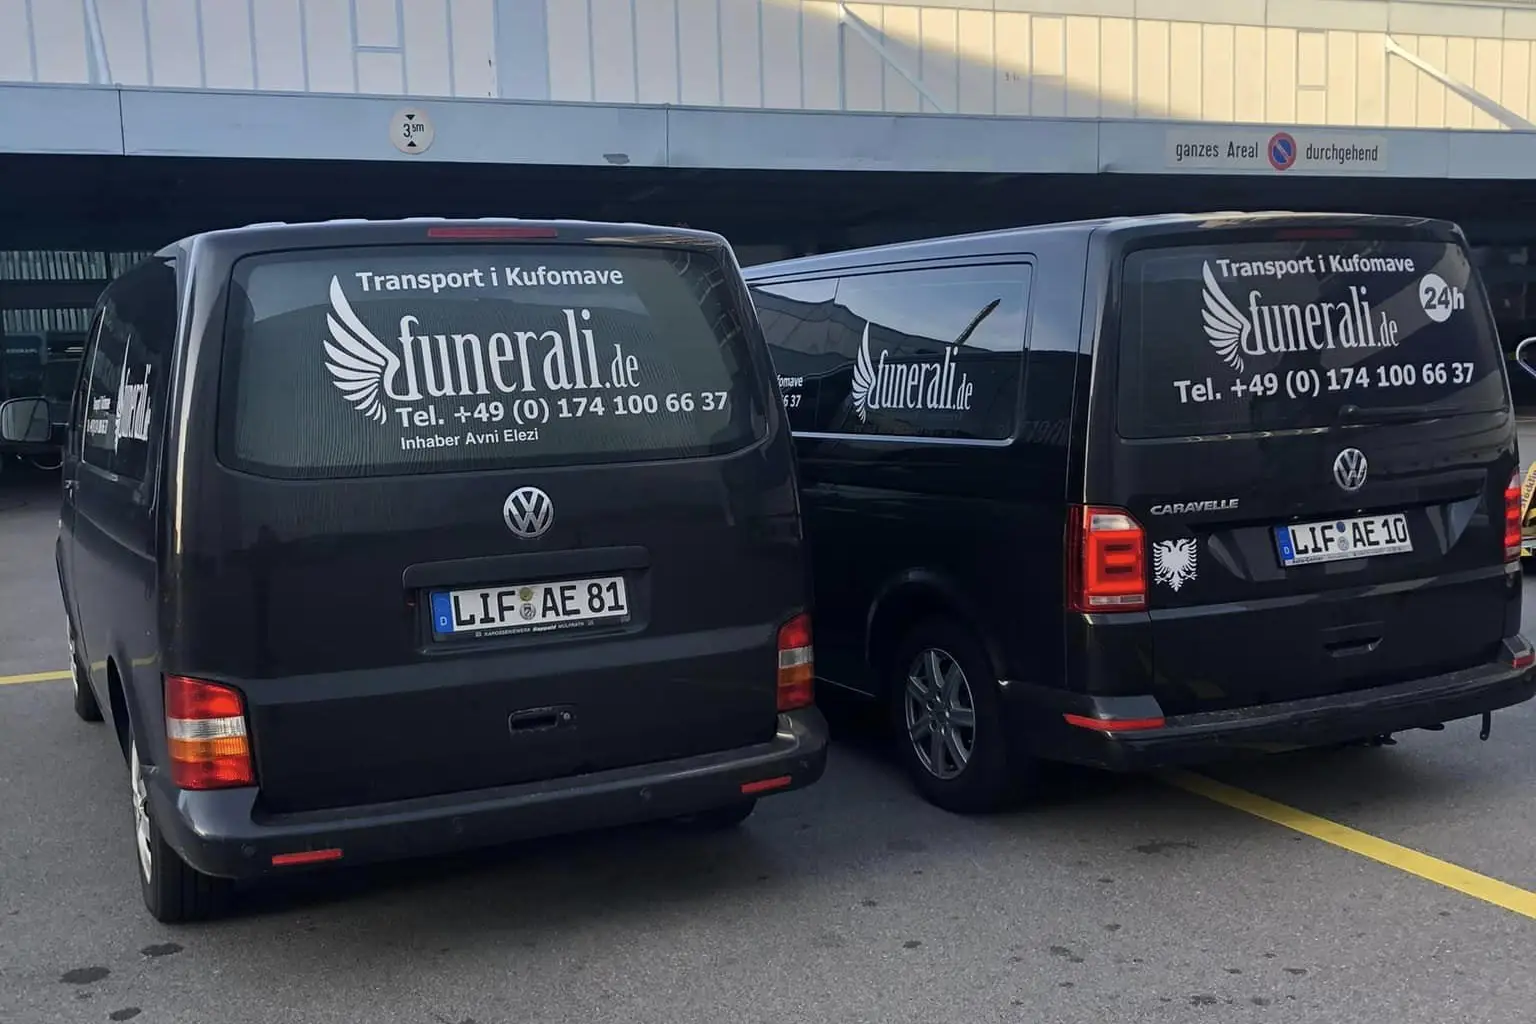 Transport Funerali Gjermani - Nga Gjermania, Zvicra, etj